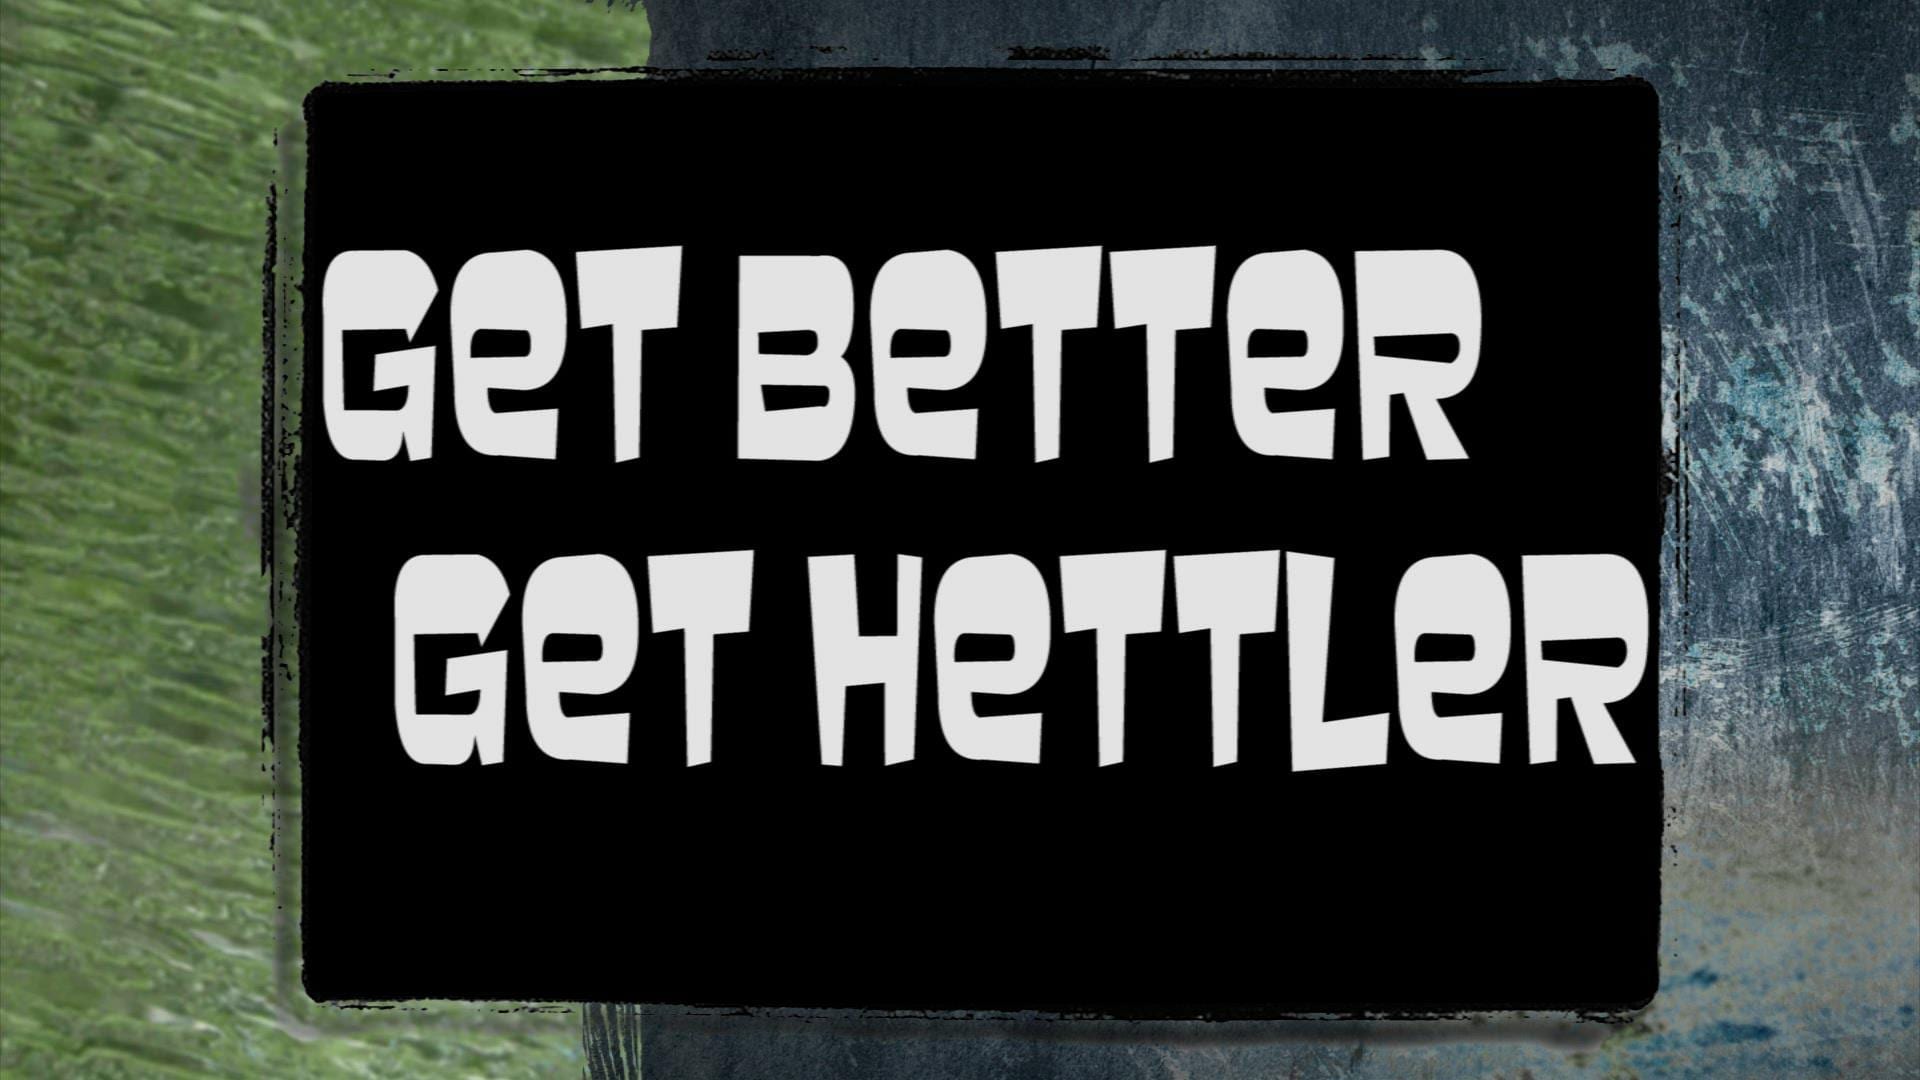 Get Better, Get Hettler | Switch To Better Service & Better Price | Hettler Insurance Agency, Lubbock Texas